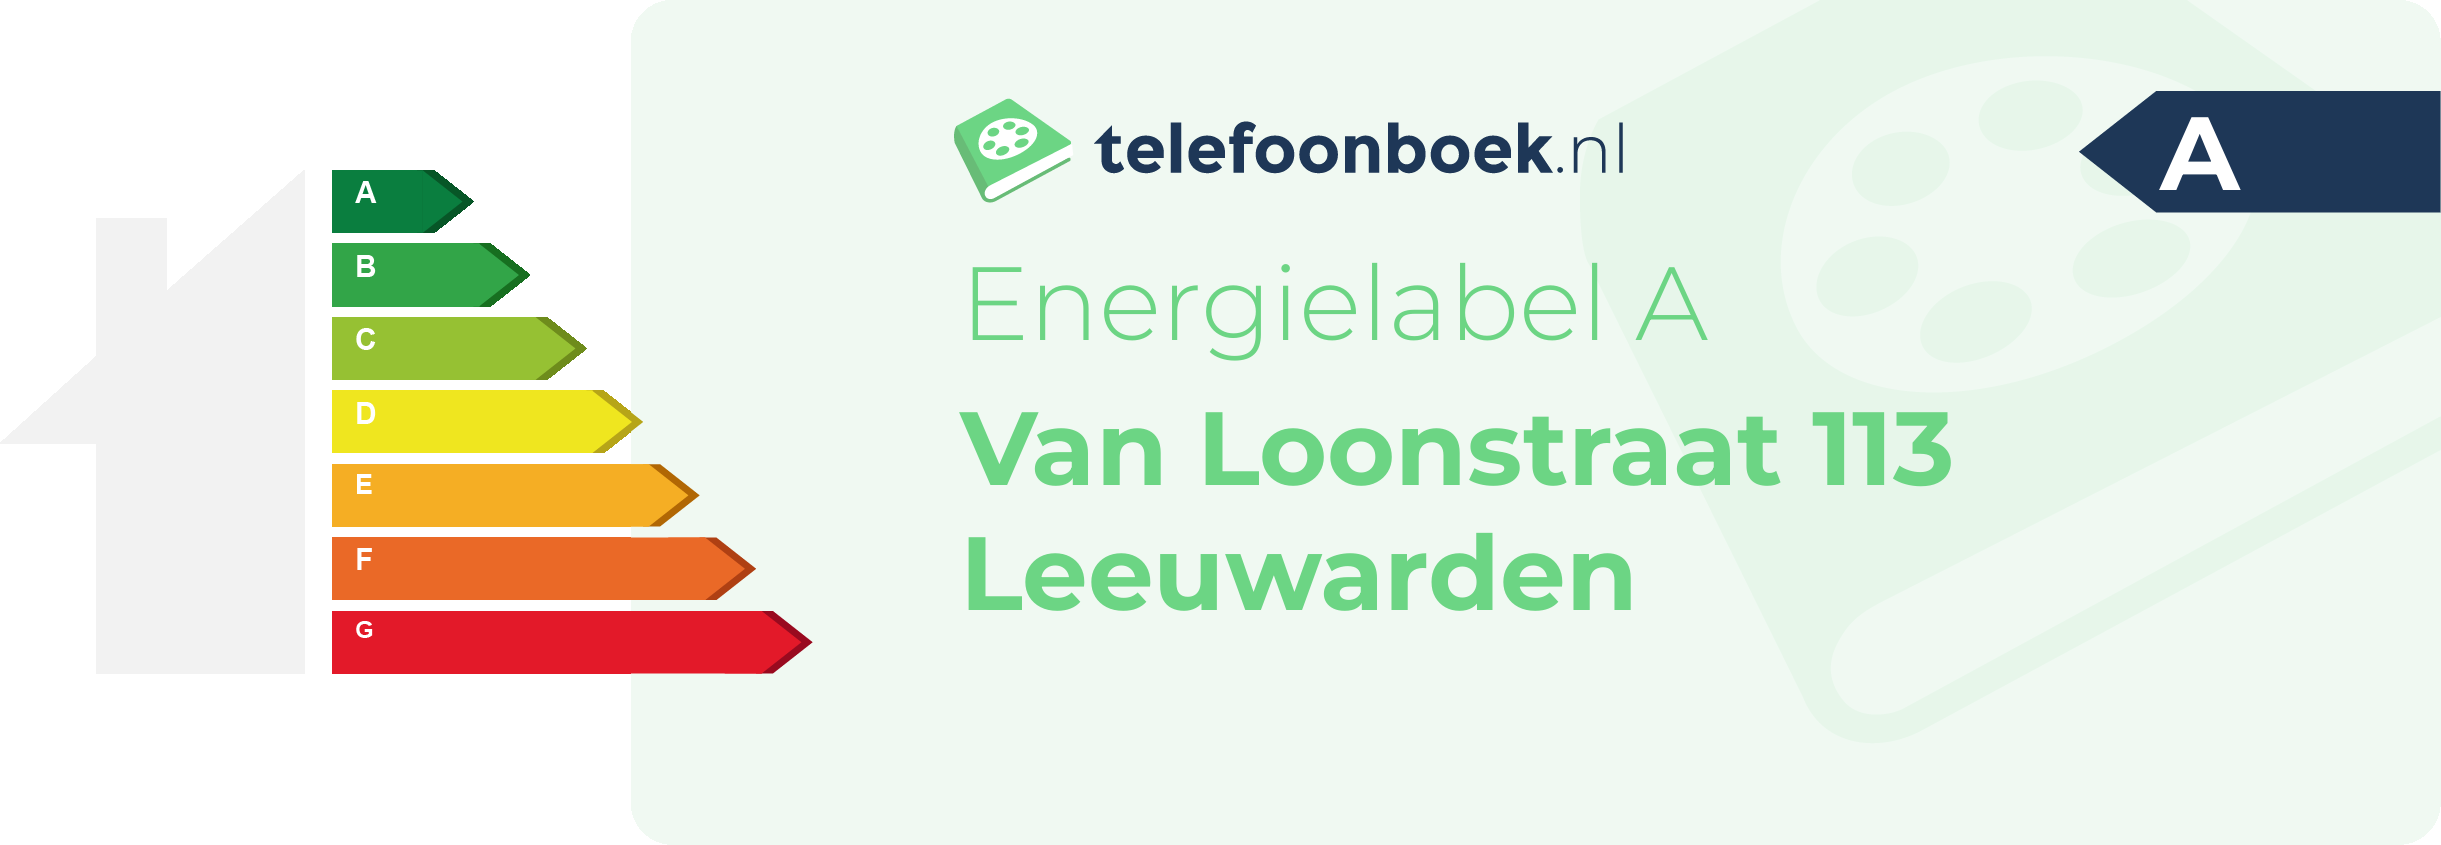 Energielabel Van Loonstraat 113 Leeuwarden